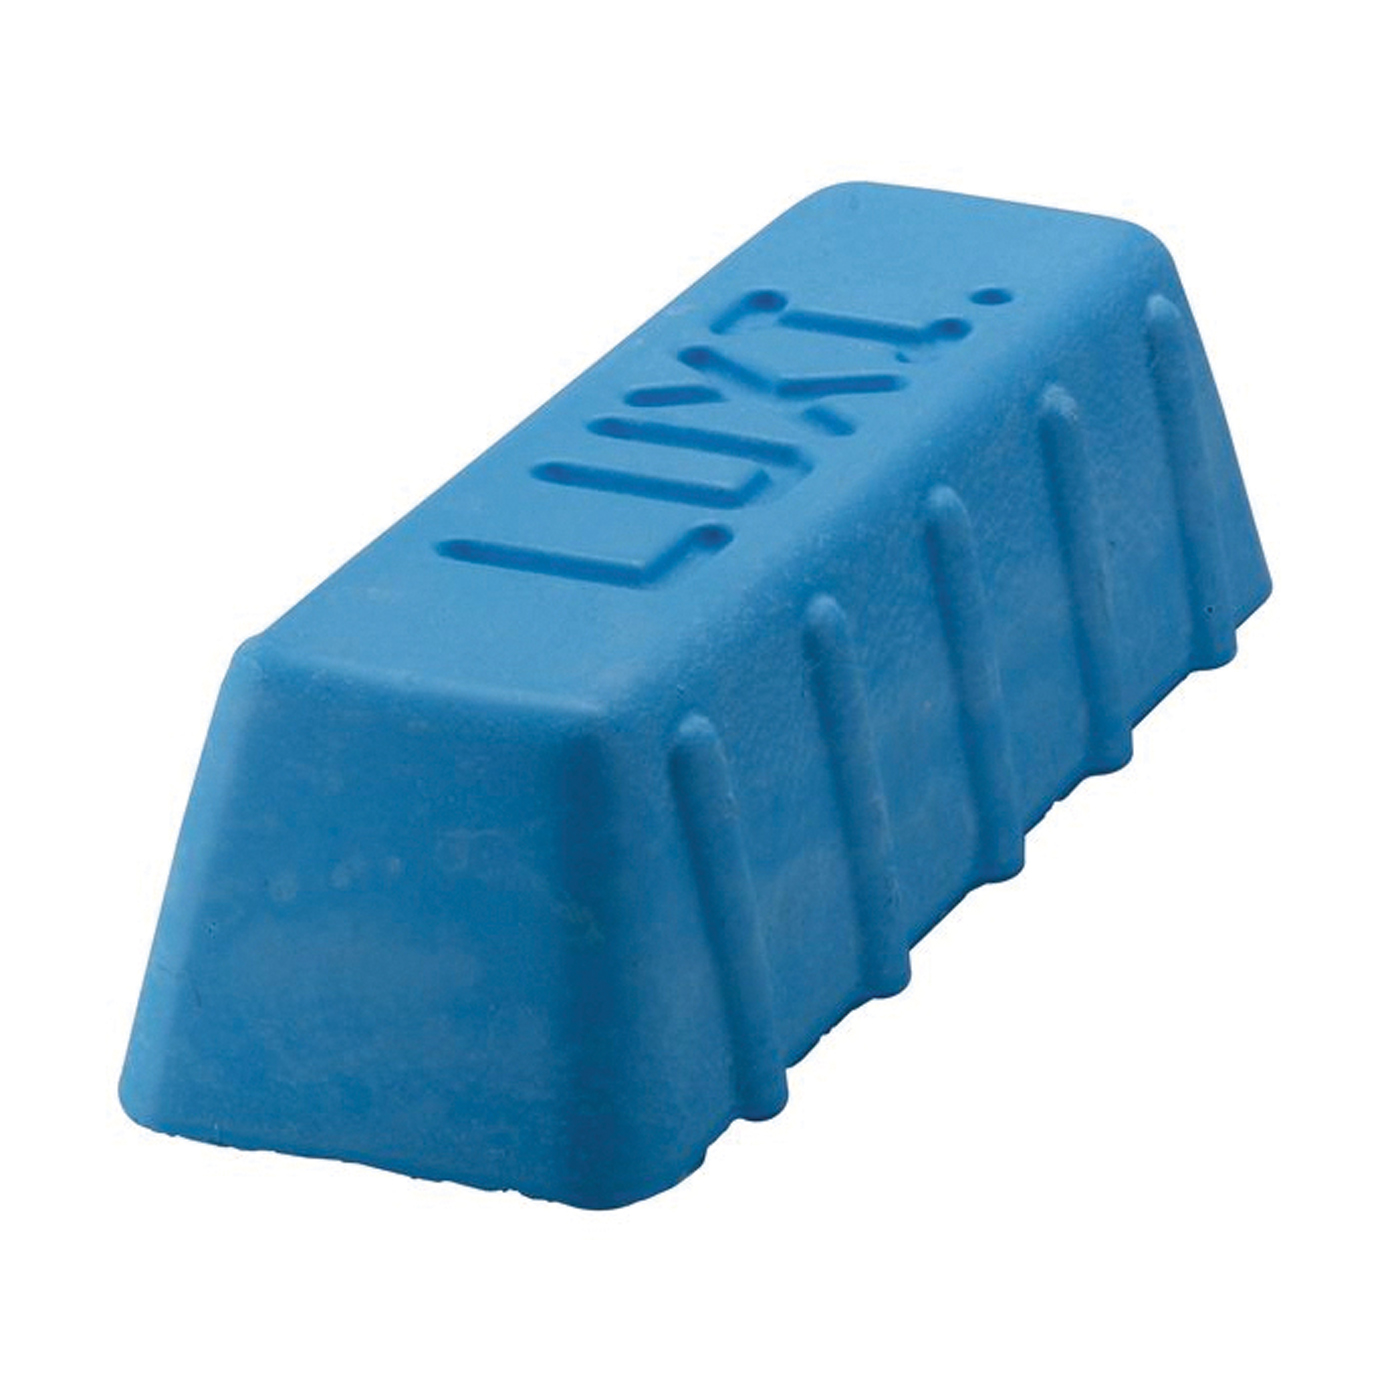 Luxi Polishing Paste, Blue - 250 g